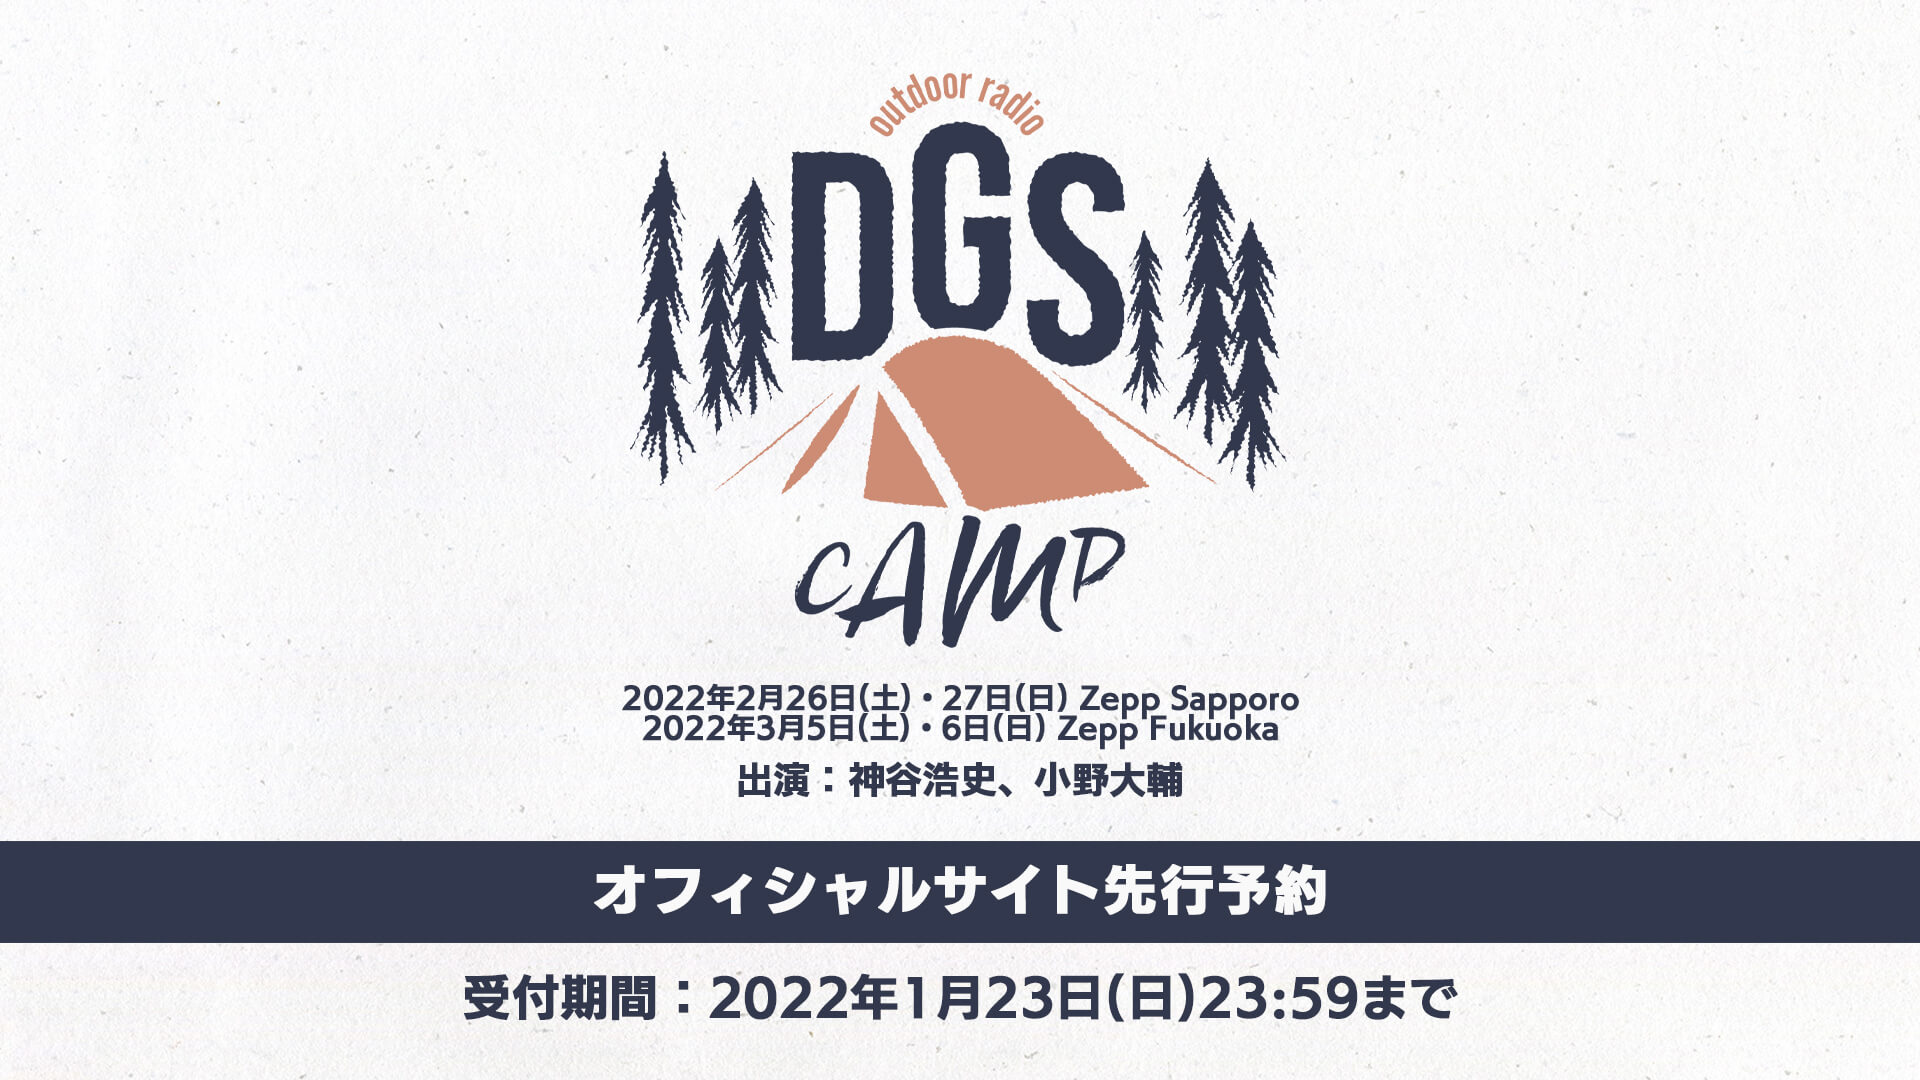 1 23 日 締切 Dgs Camp公式サイト先行予約受付中 文化放送